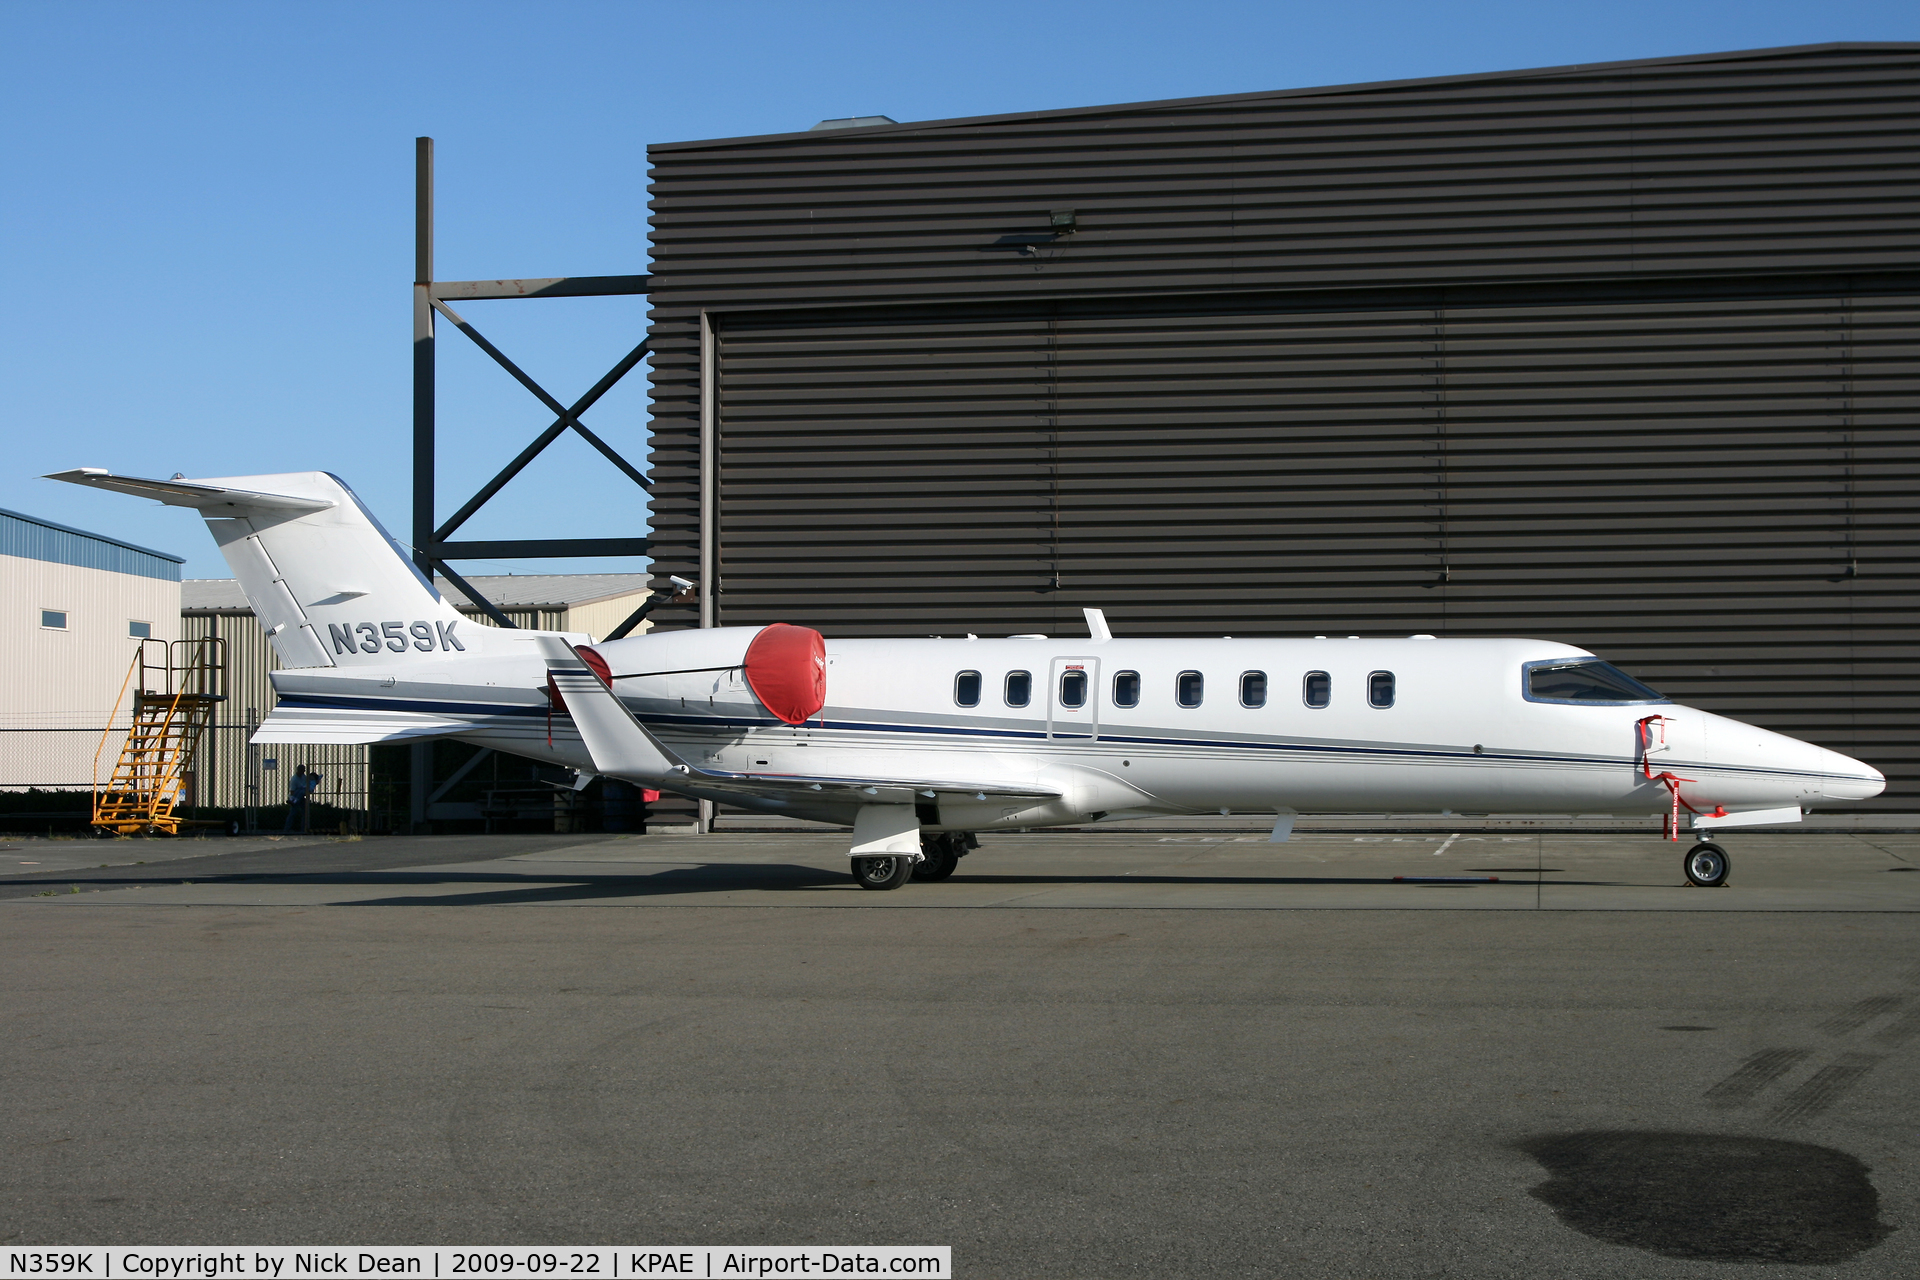 N359K, 2002 Learjet 45 C/N 216, KPAE